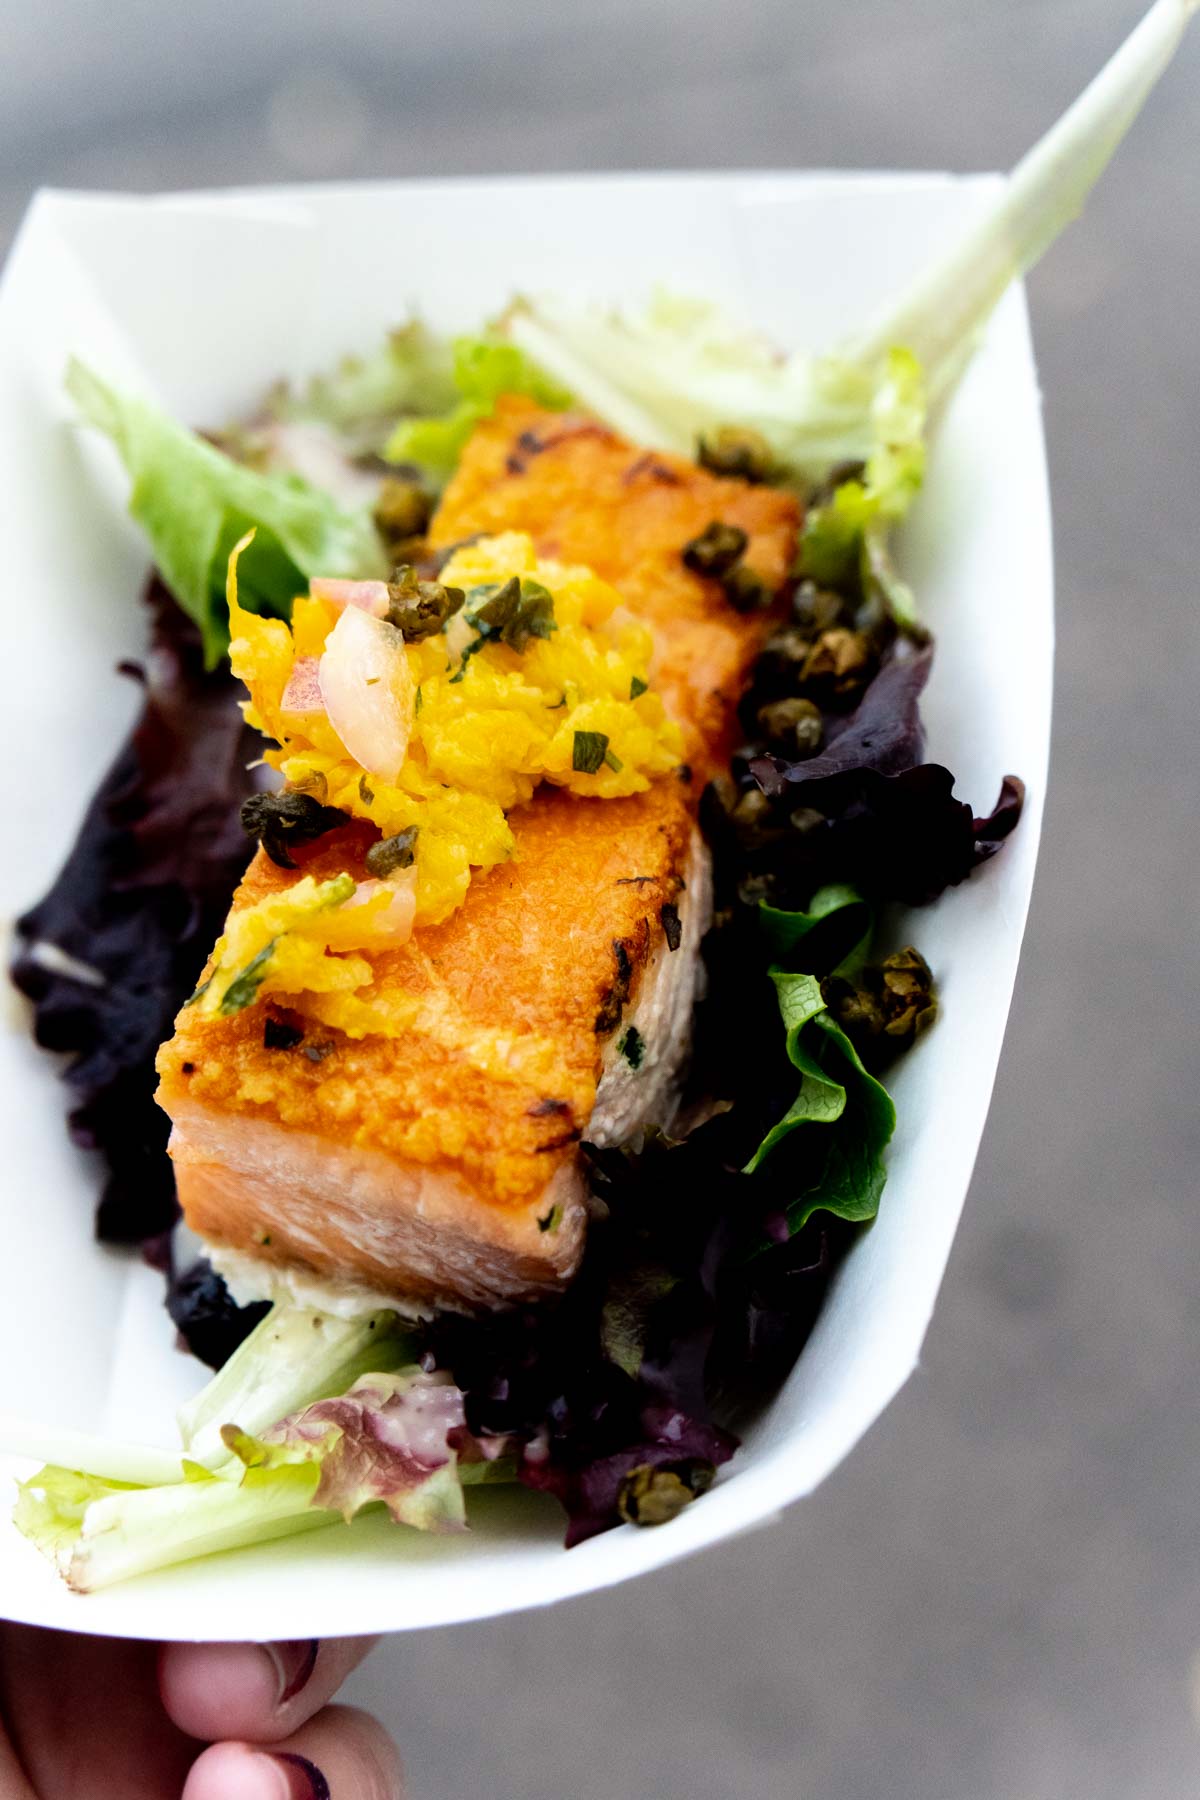 Salmon salad at Disneyland Food Festival